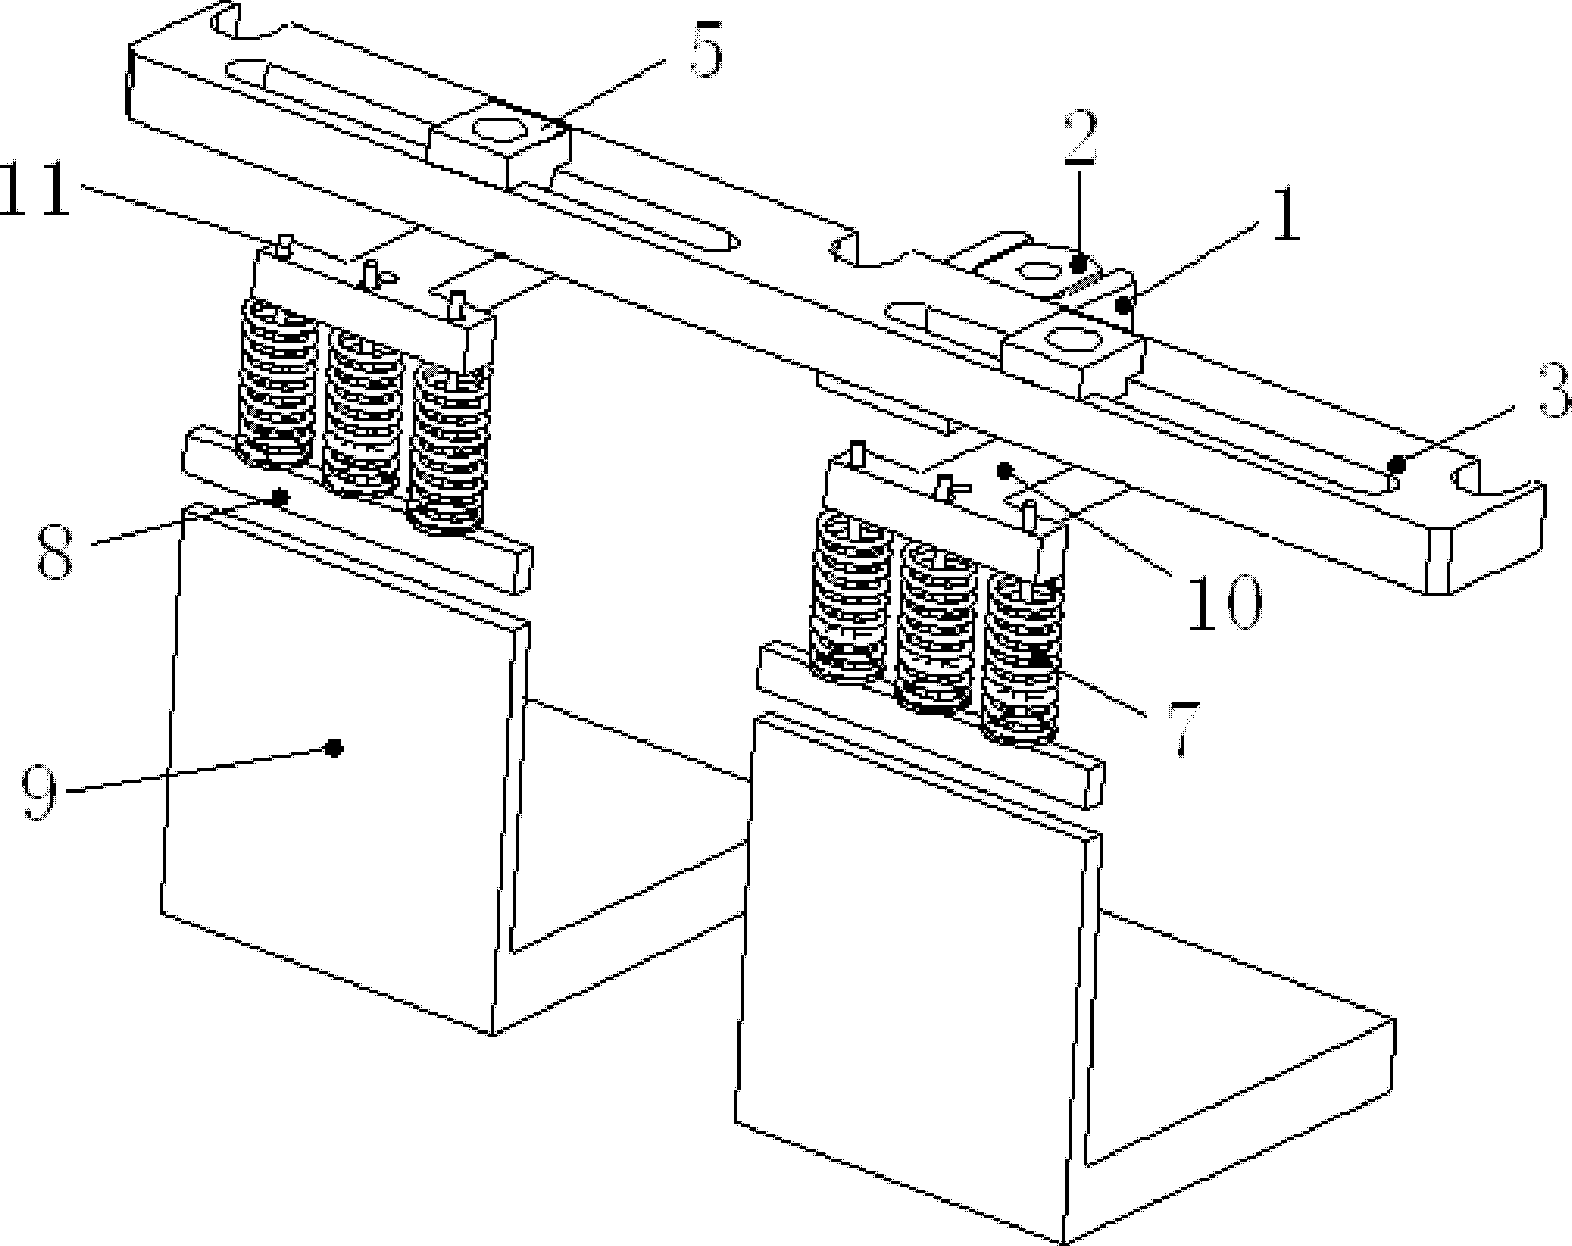 Positioning system for laser printer